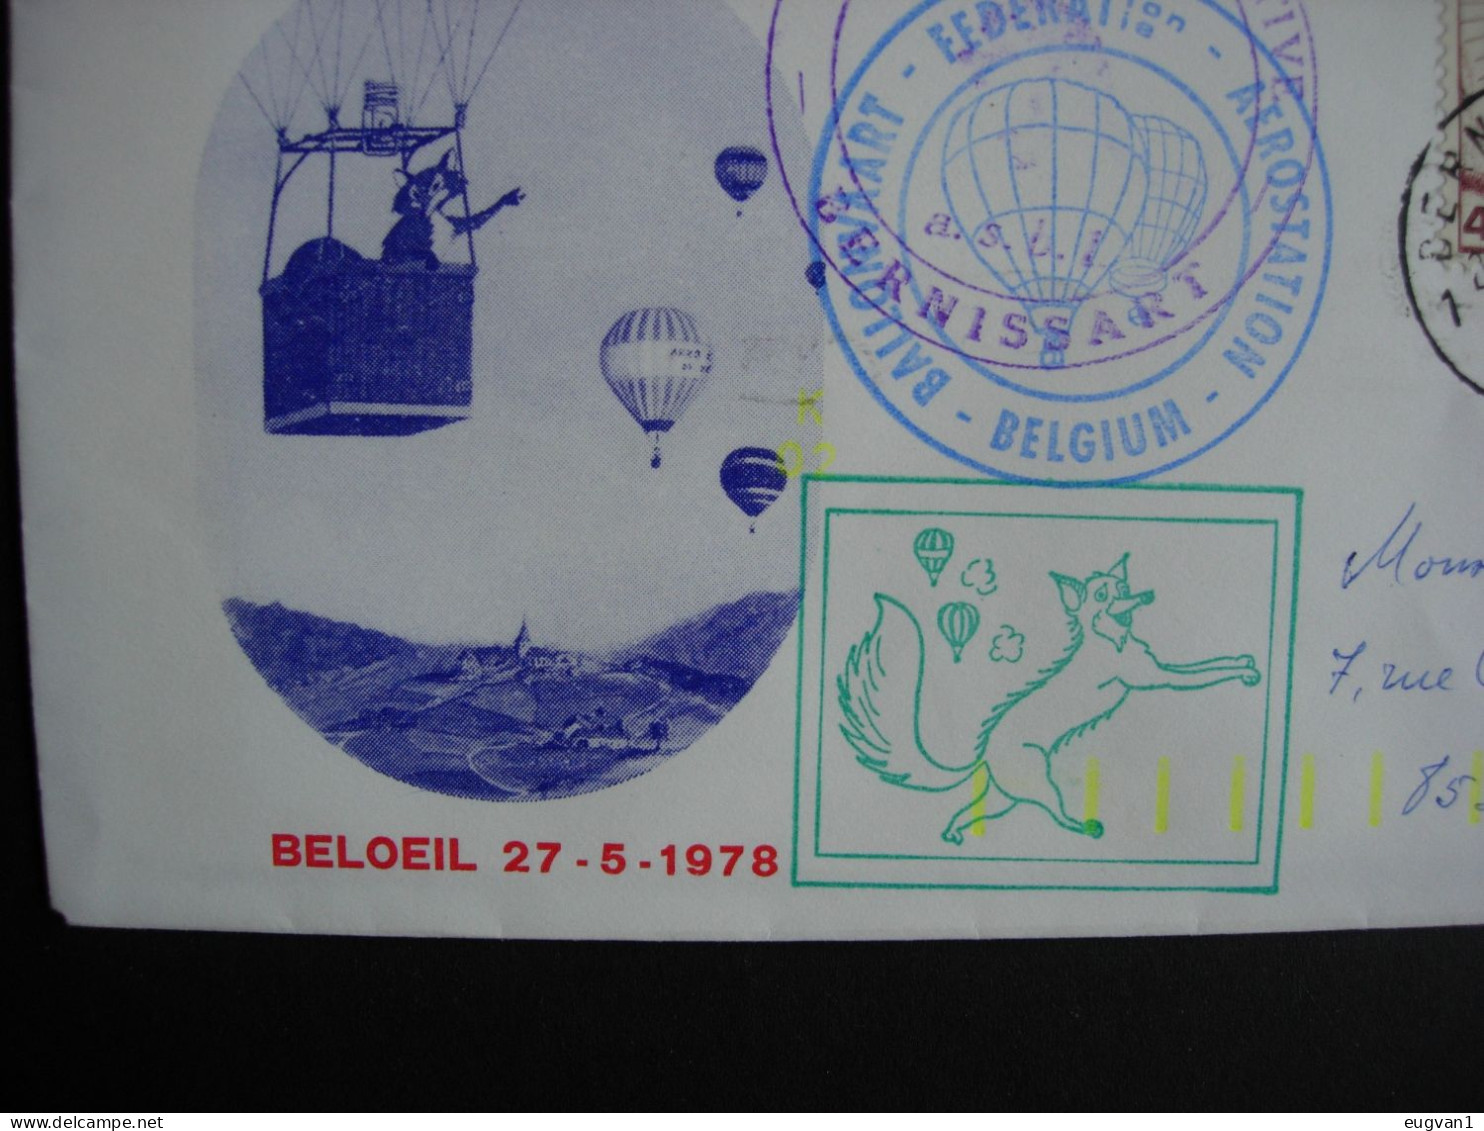 Belgique. Challenge Prince De Ligne. Vol Par Montgolfière Beloeil 27.5.1978. Atterrissage Bernissart. - Airships